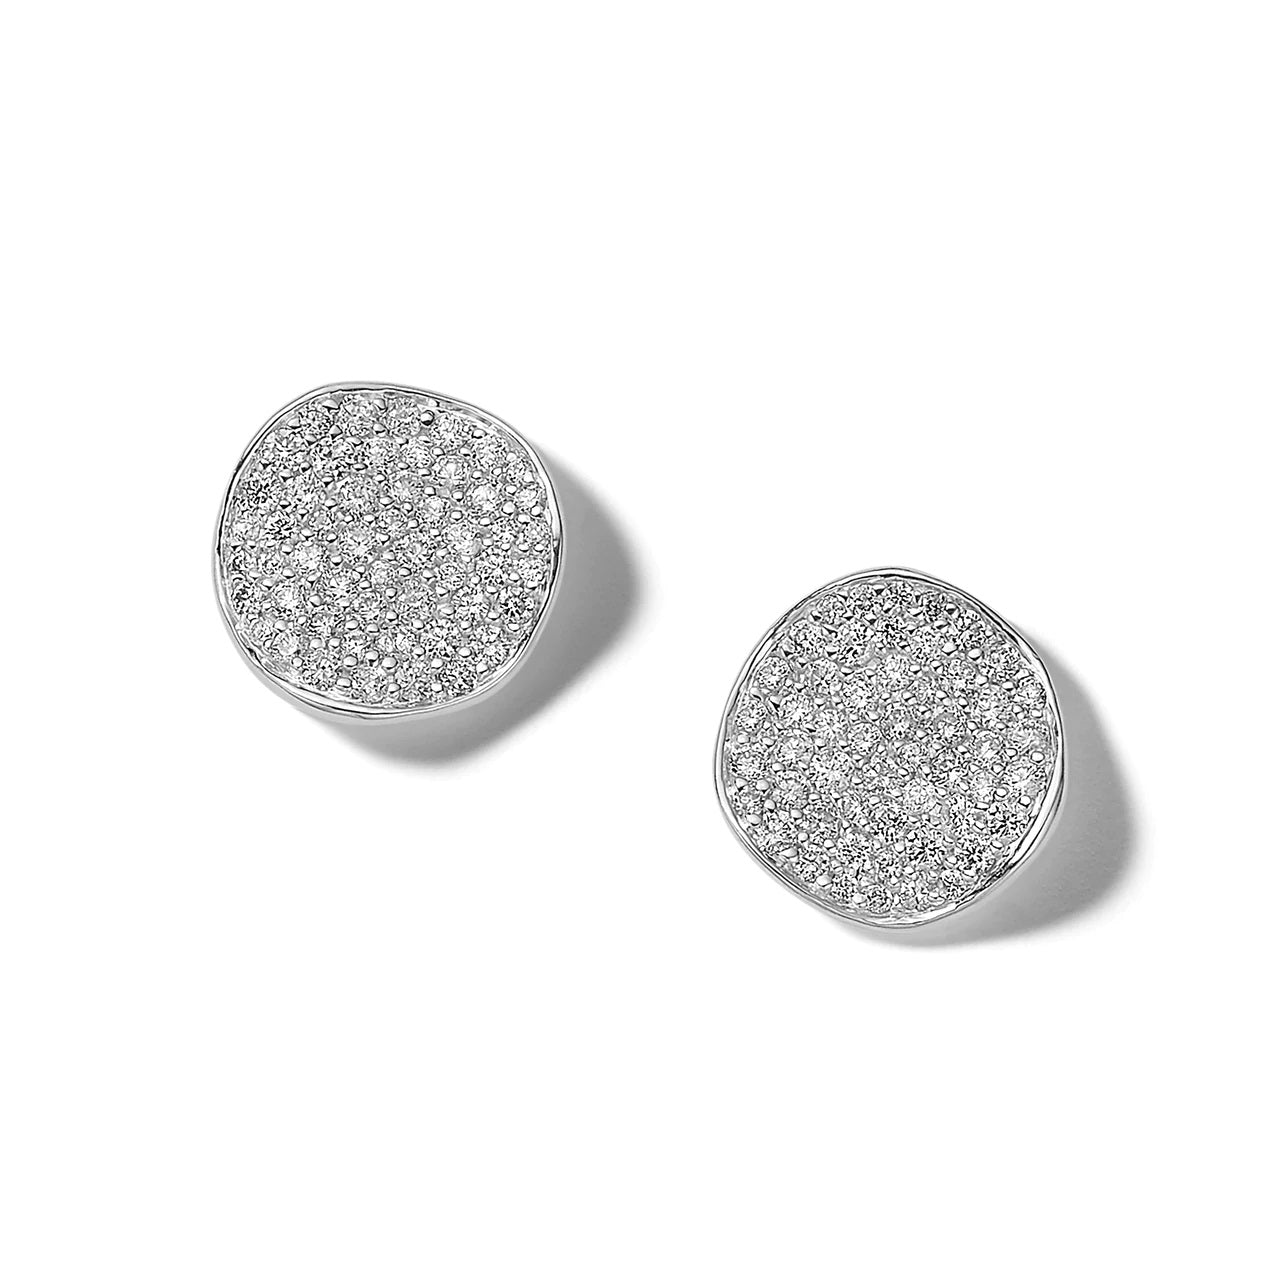 IPPOLITA Stardust Sterling Silver Flower Stud Earrings with Diamonds